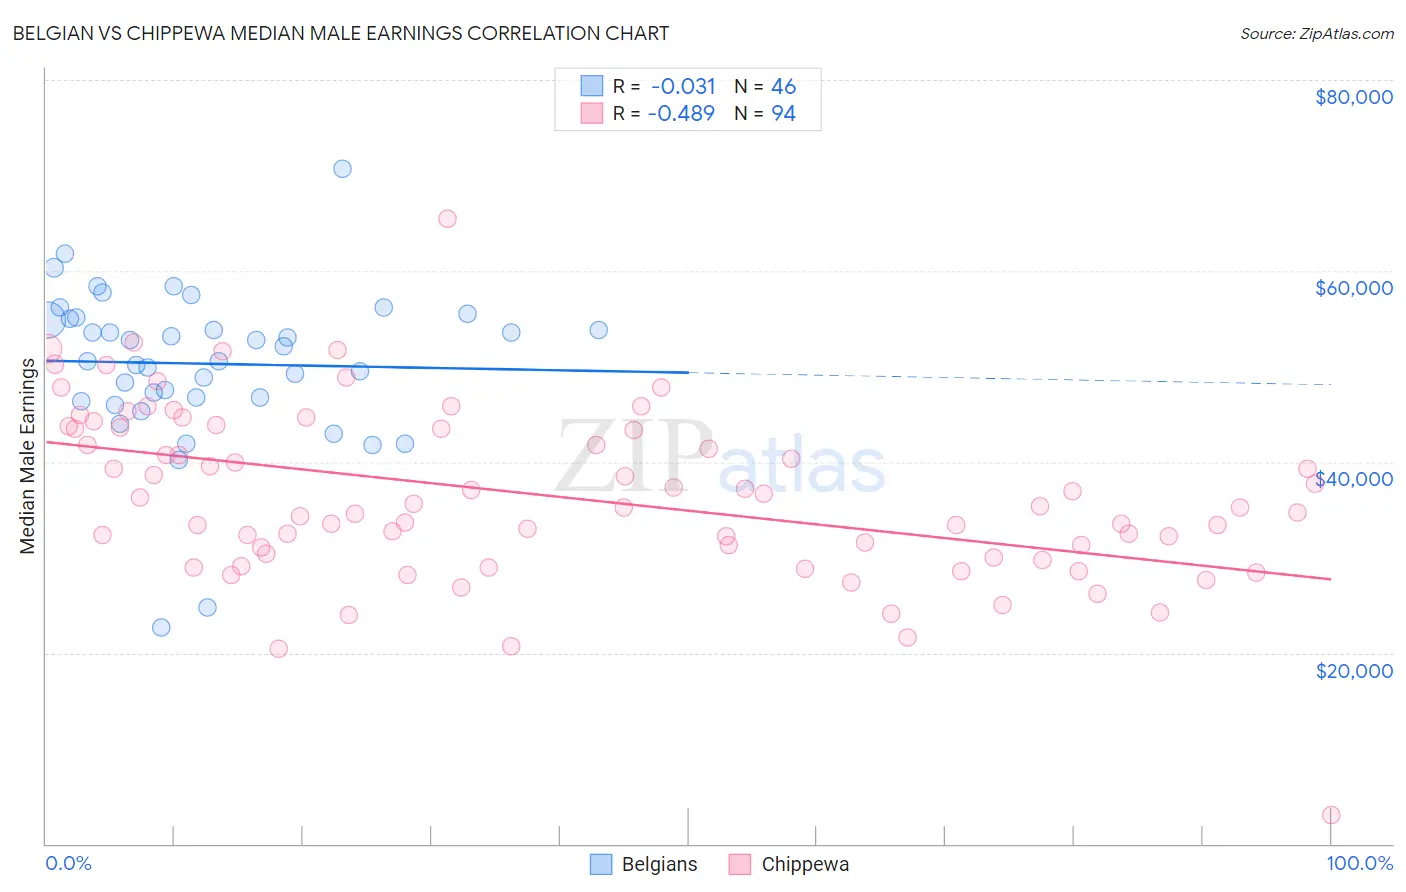 Belgian vs Chippewa Median Male Earnings